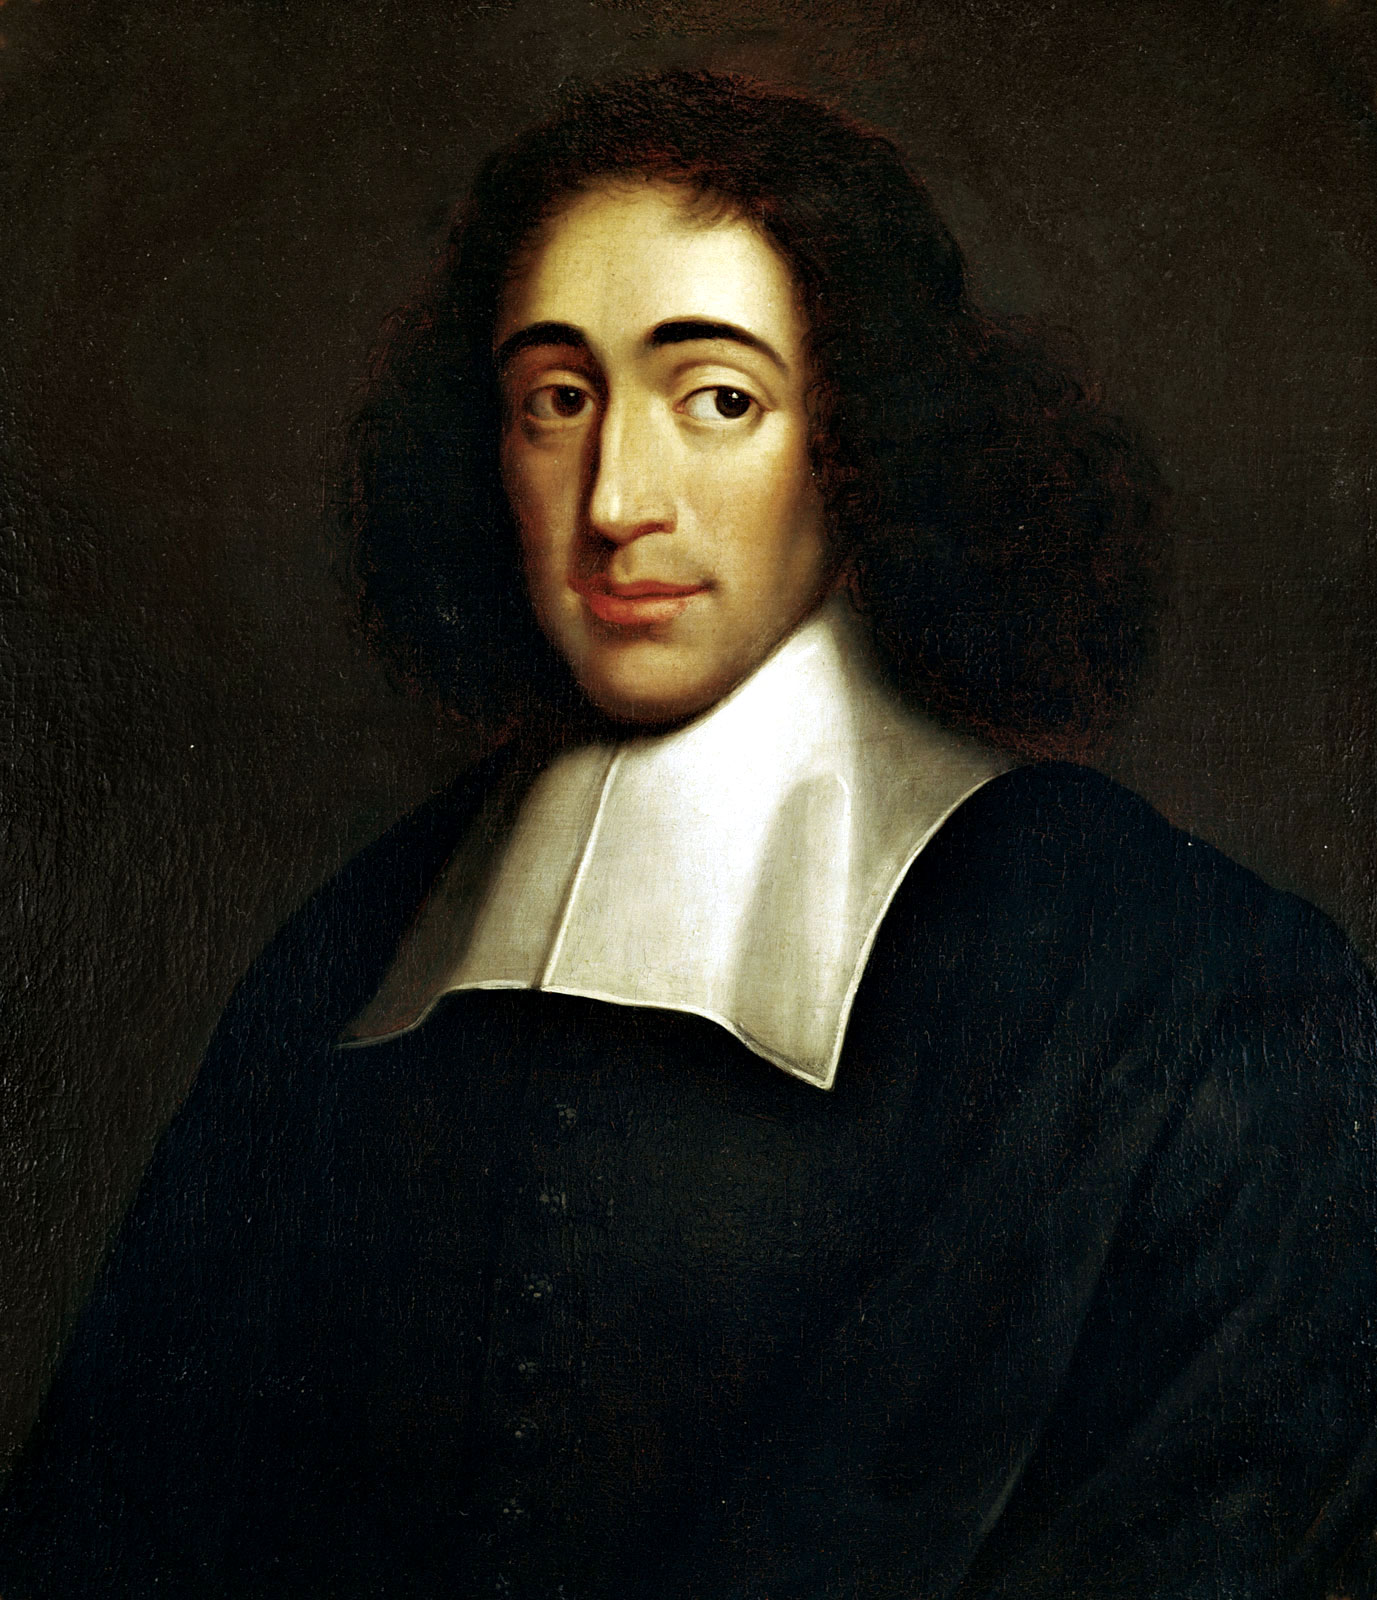 Retrat de Spinoza per il·lustrar filòsofs que han influït en l'educació